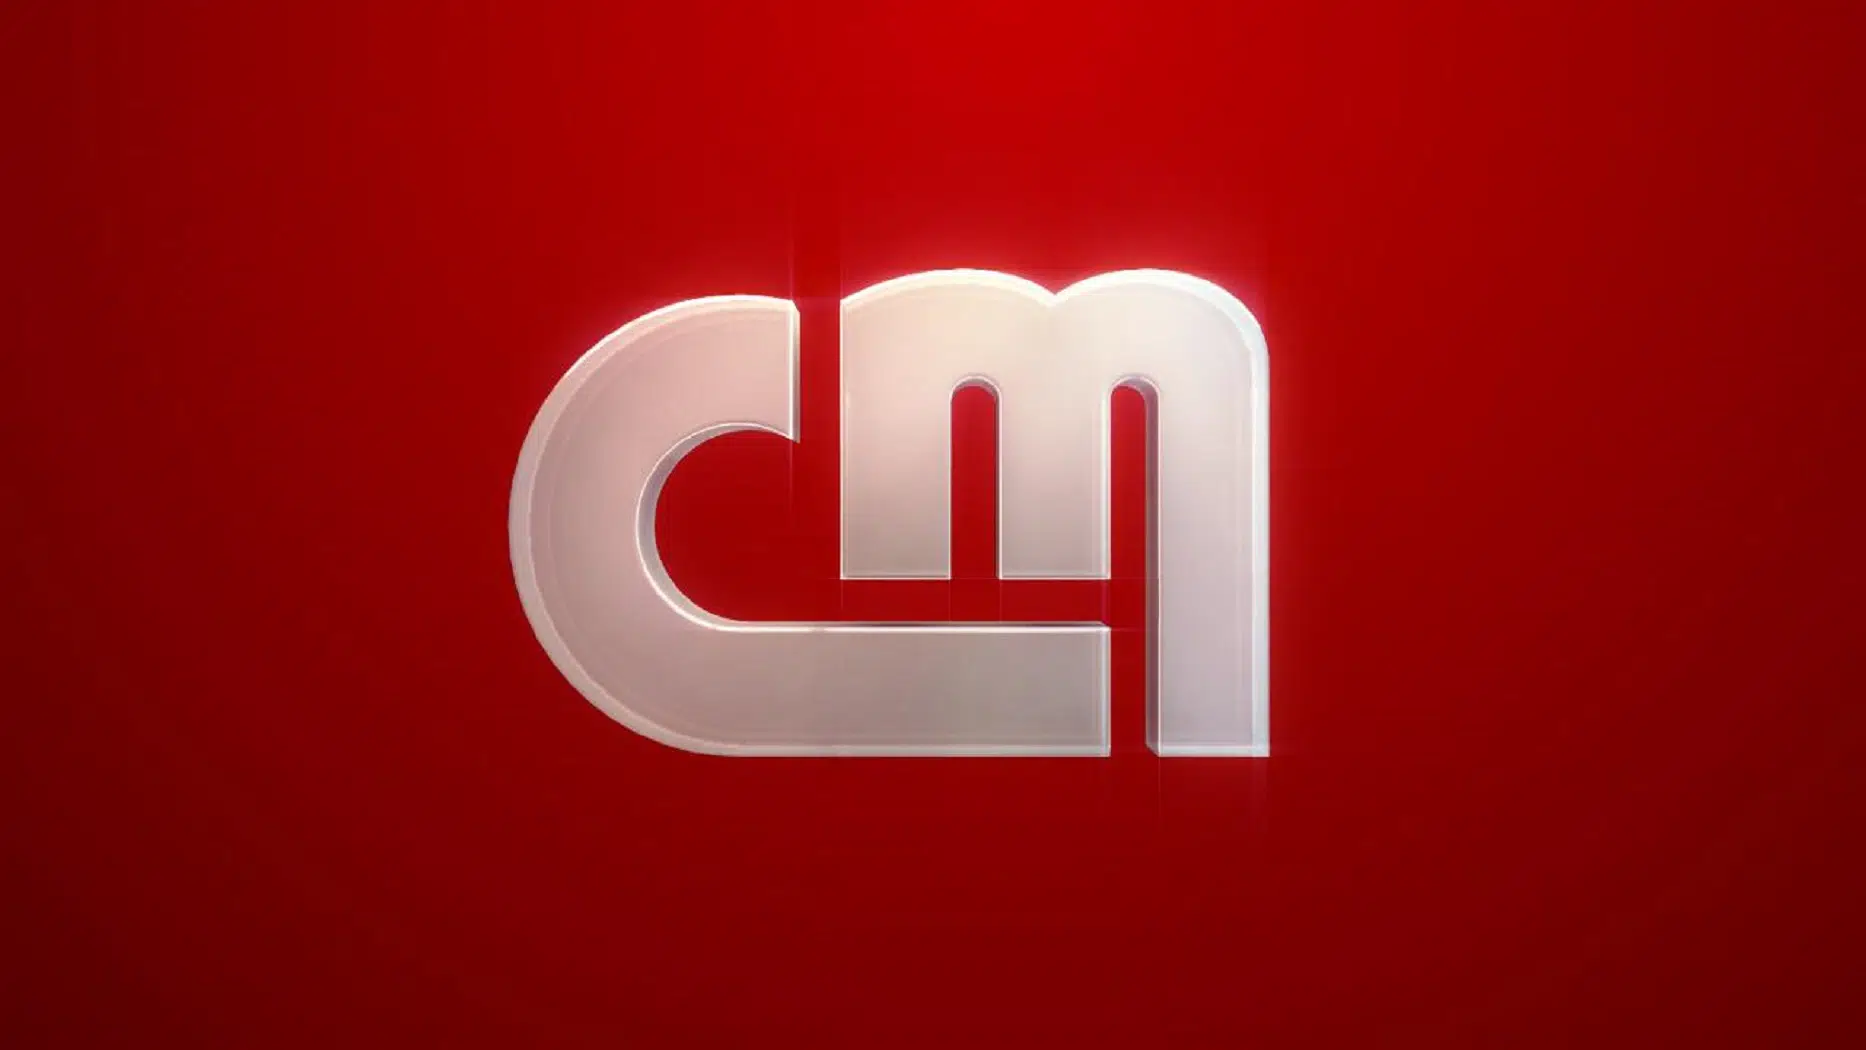 Cmtv Logotipo